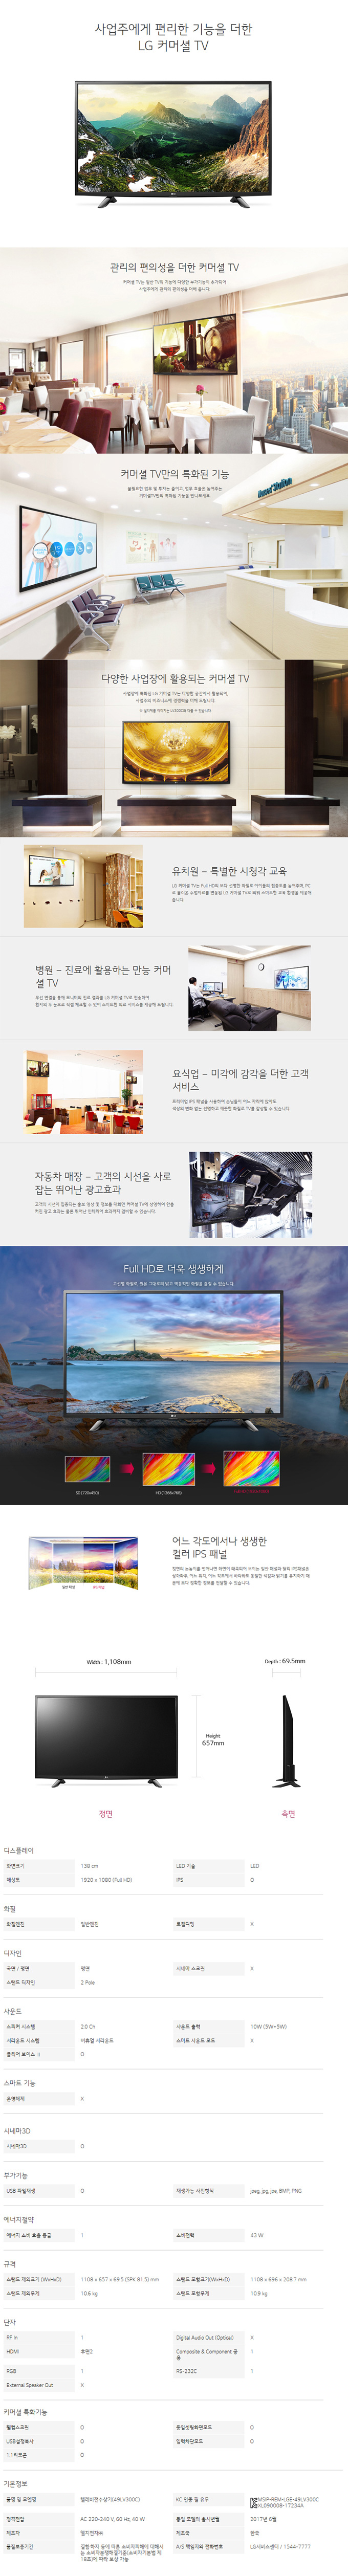 강남케이블 - LG 49인치 LED TV (49LV300C) 상세보기